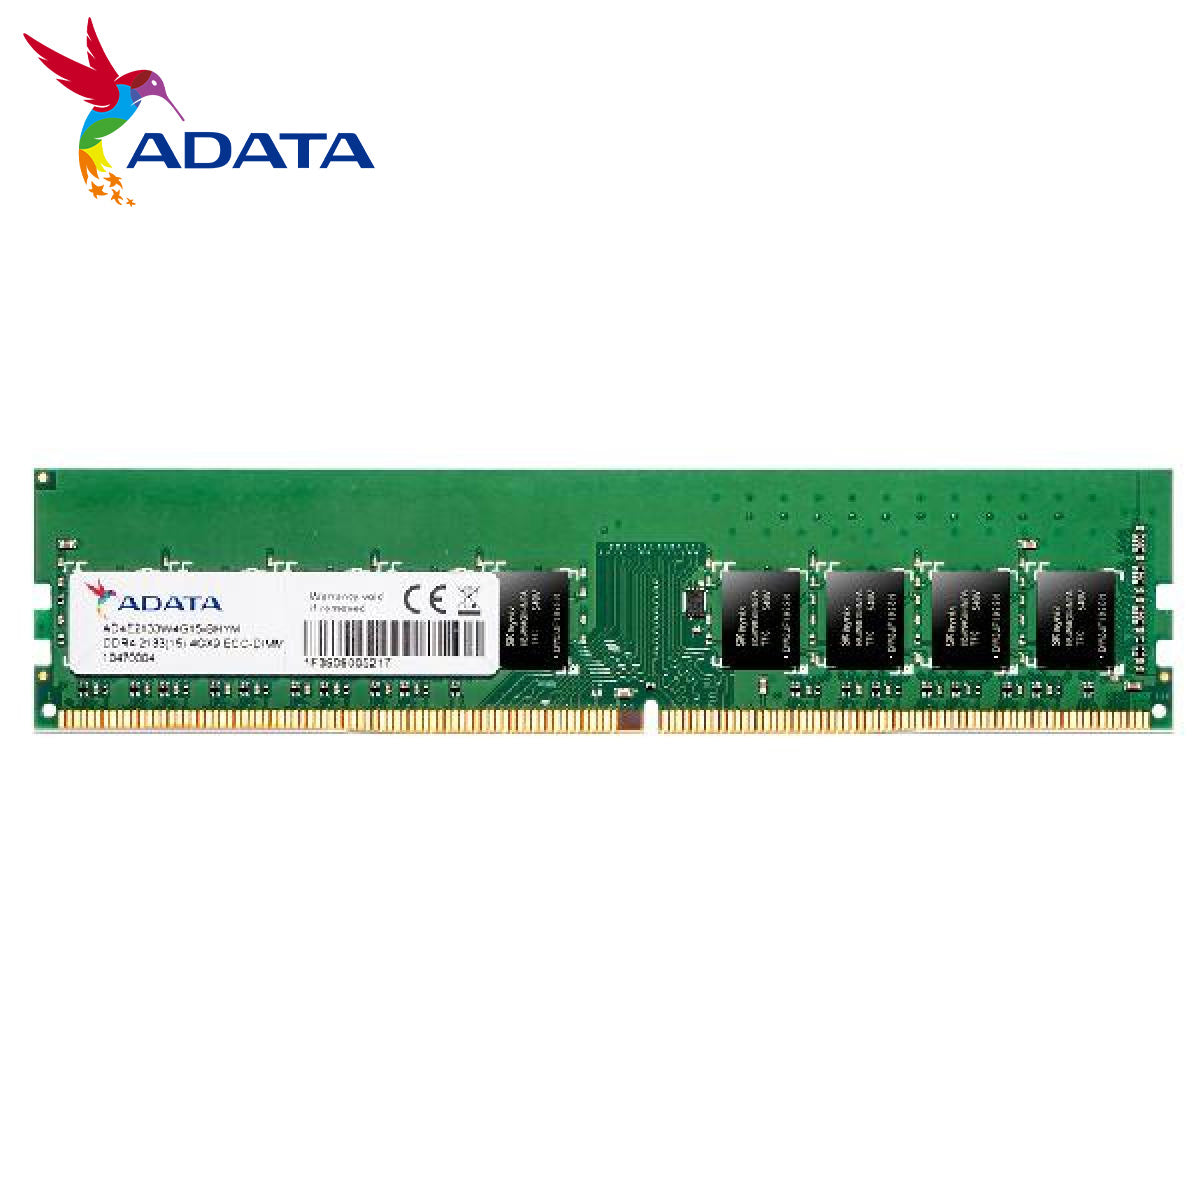 ADATA Ram 4 ECC-DIMM - 8GB bus 2666Mhz(AD4E266638G19-BSSC)